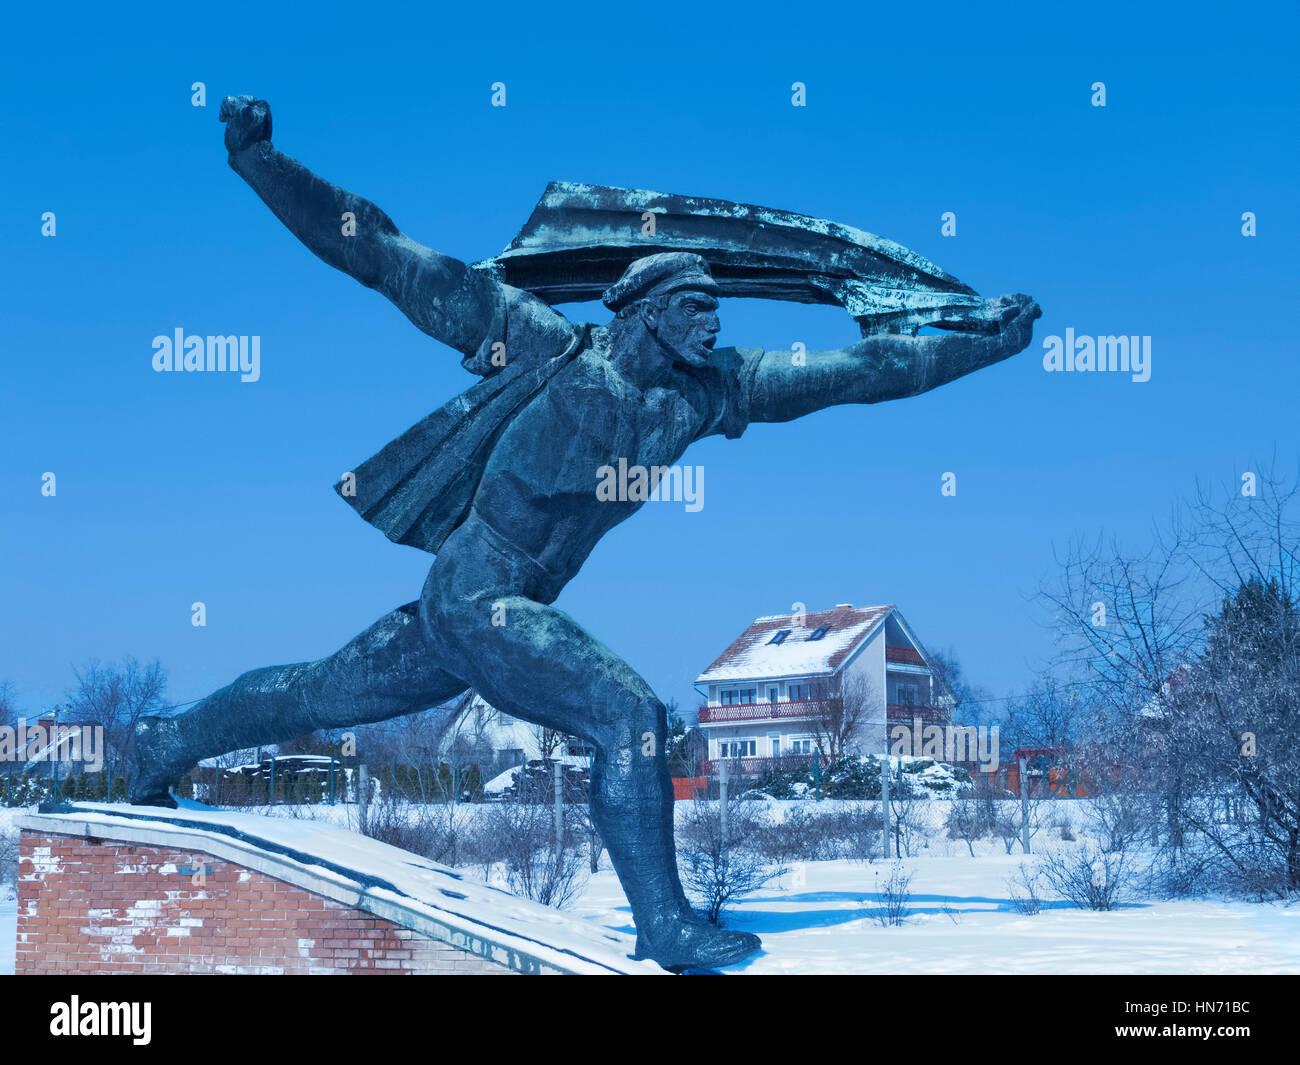 Le mémorial de la République socialiste hongroise, l'une des statues dans un parc couvert de neige Memento, Budapest.. Banque D'Images